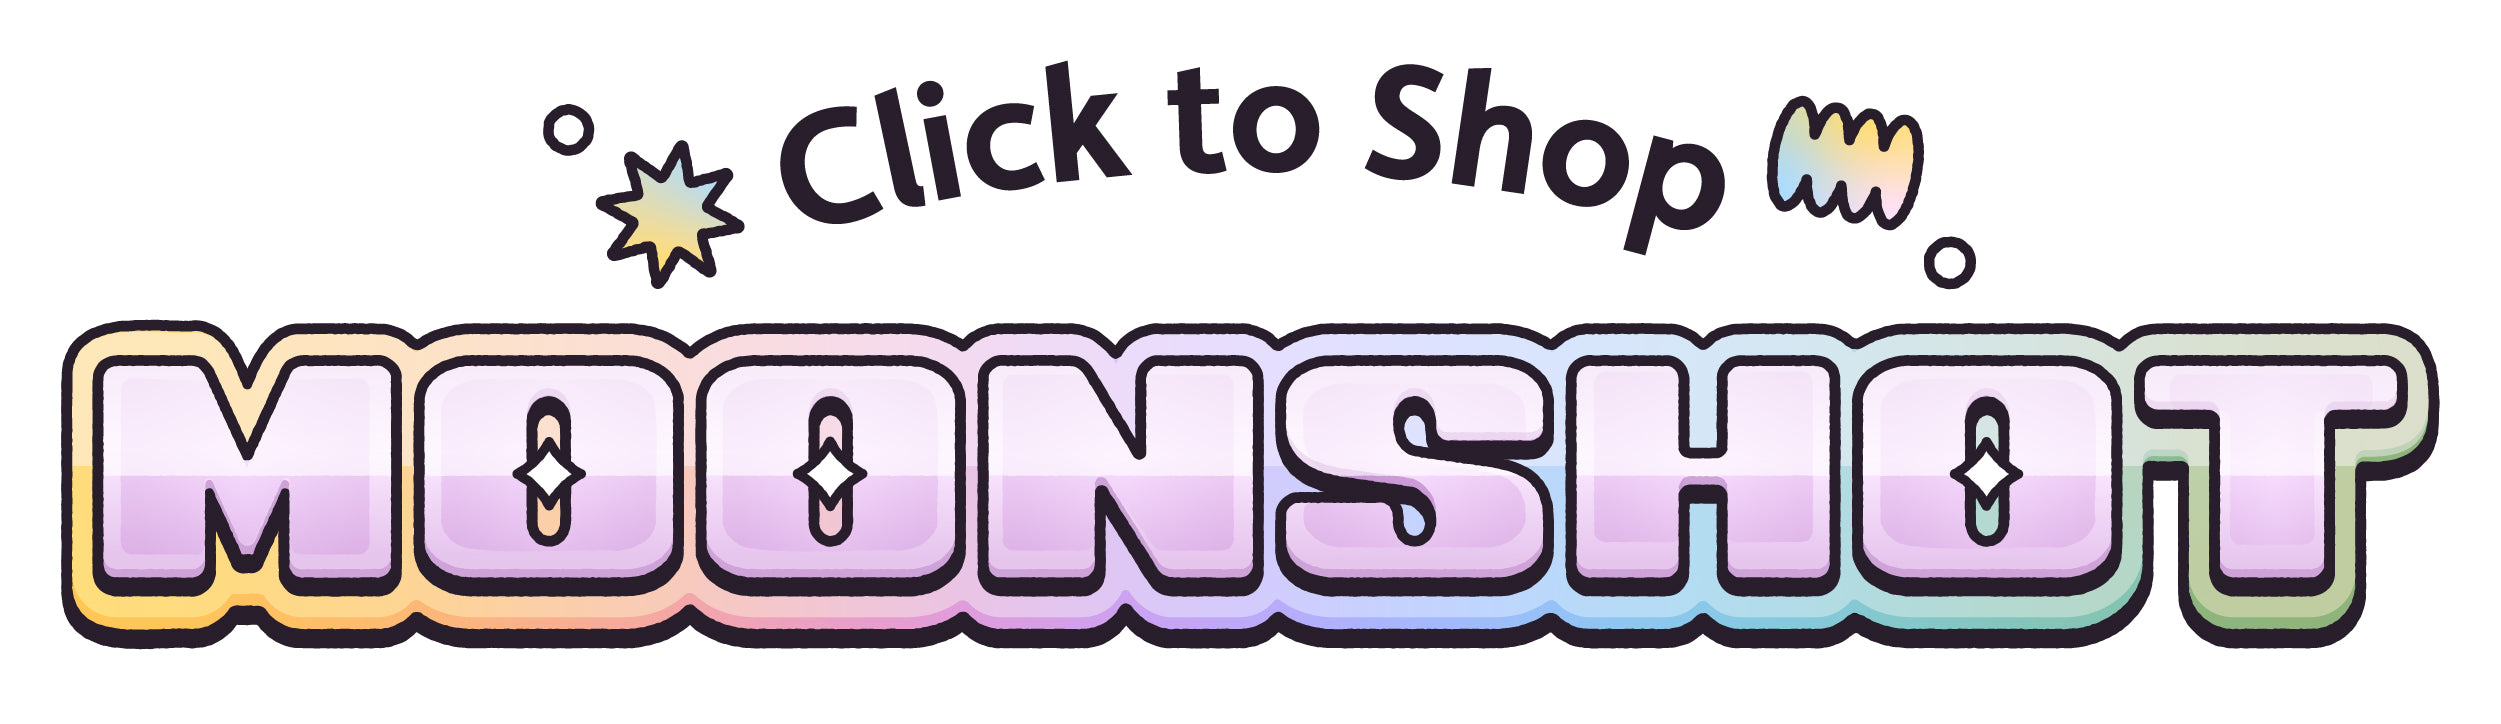 Click to shop Moonshot